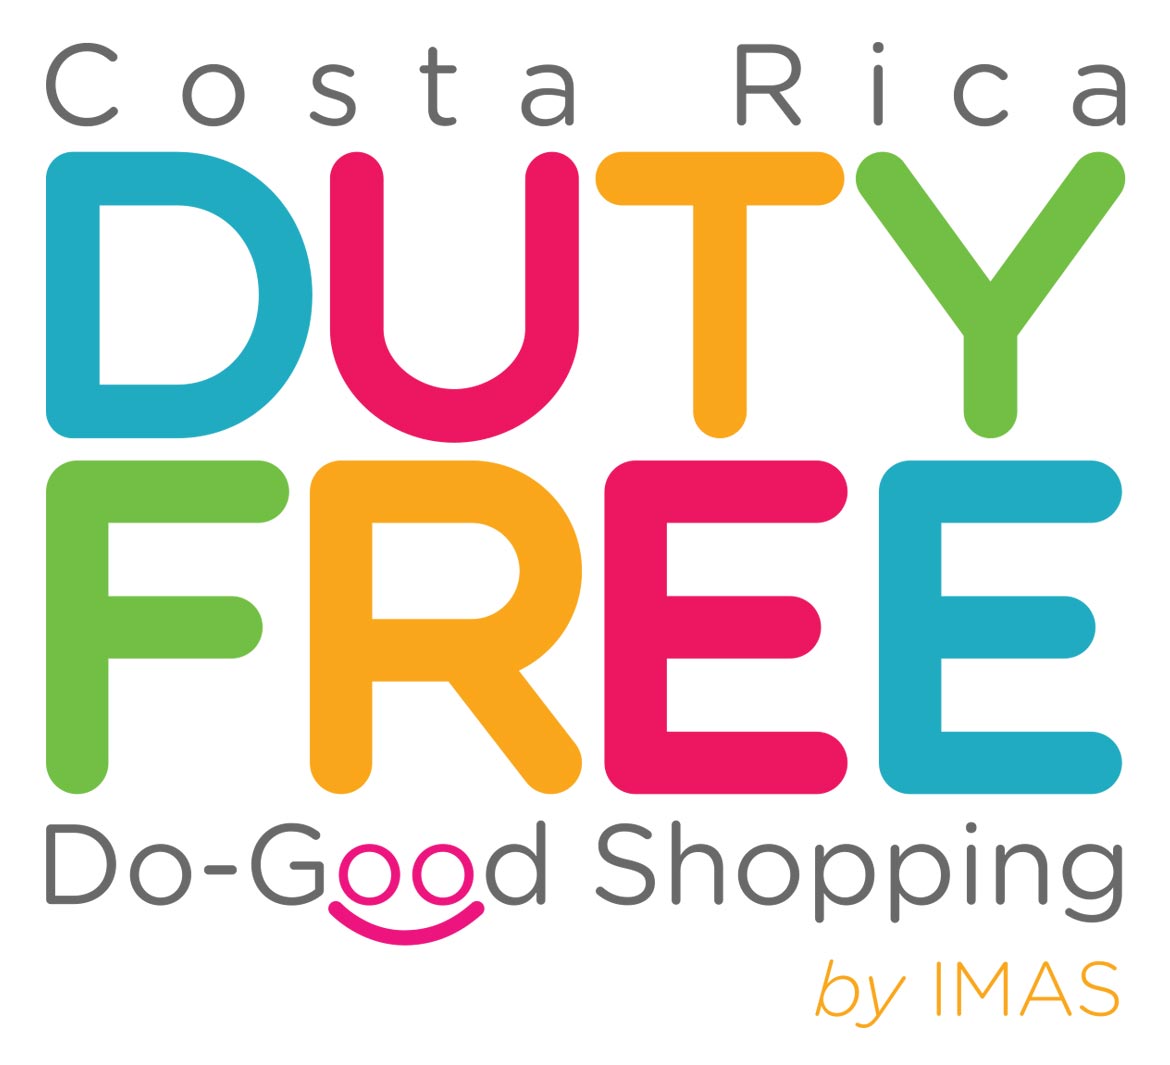 La tienda ubicada en la entrada al país tendrá el rostro de la imagen turística de Costa Rica